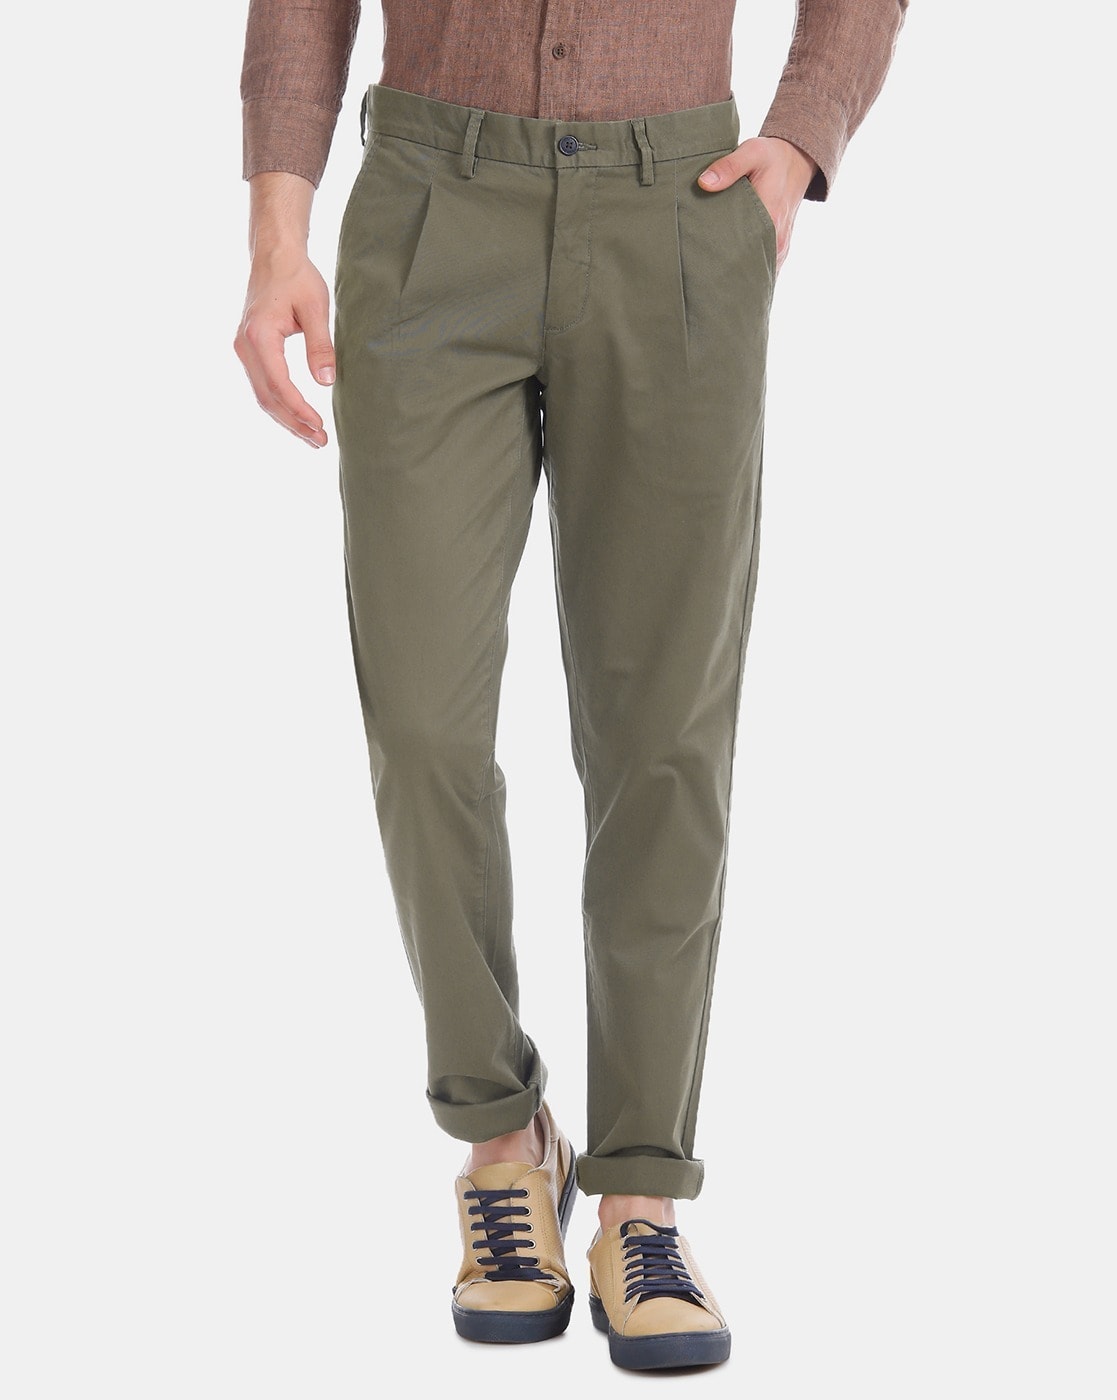 Buy Arrow Sports Men's Regular Pants (ASZTR2546E_Navy_38) at Amazon.in